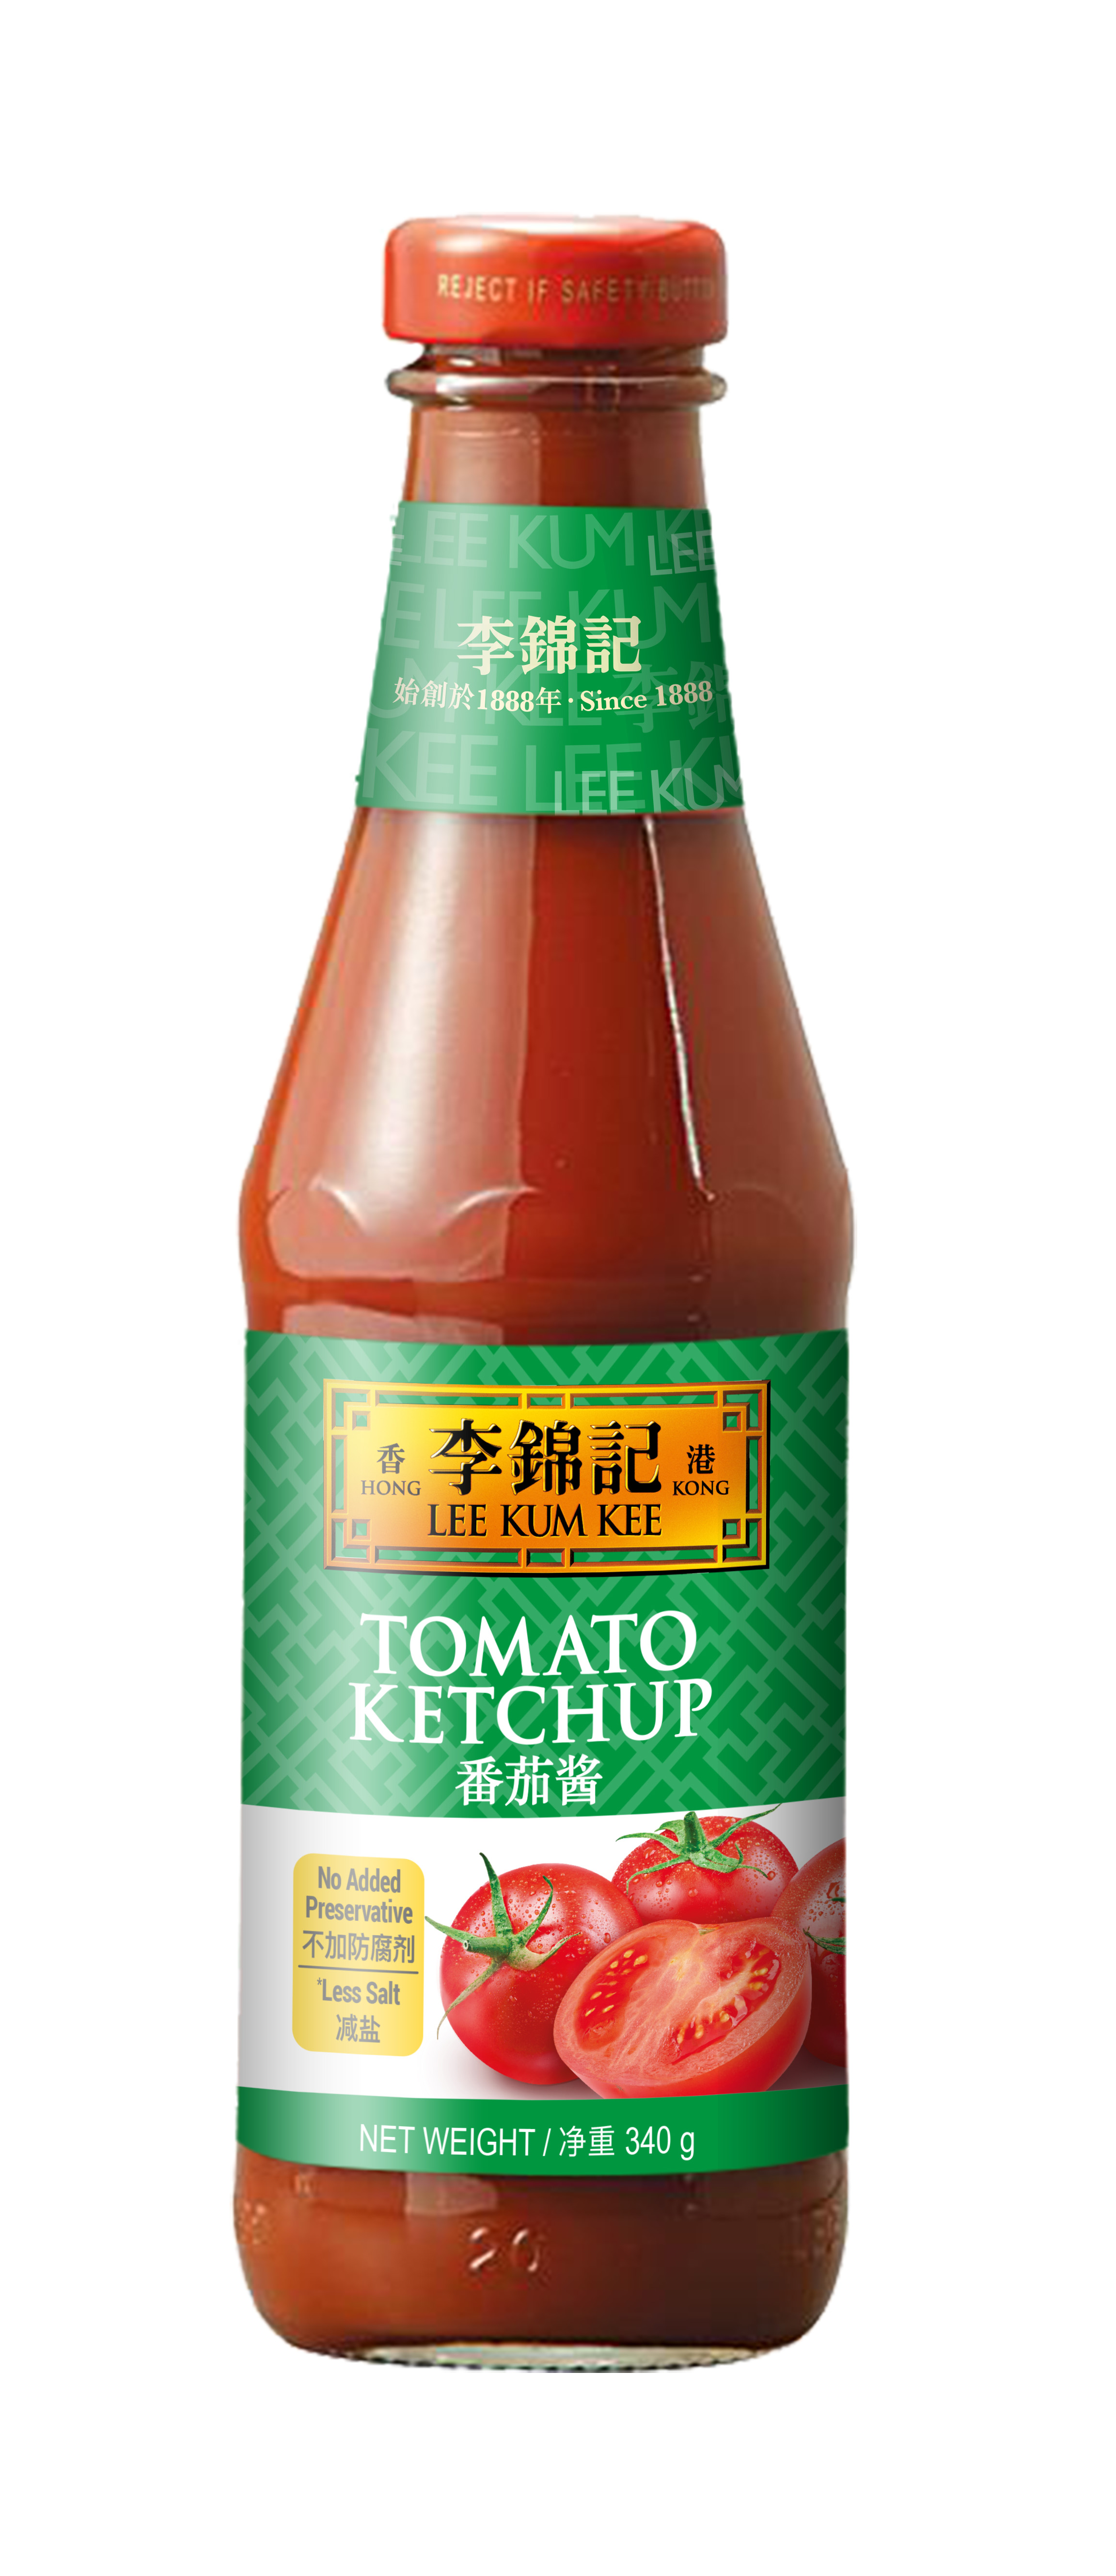 Sriracha Mayo 445ml Front